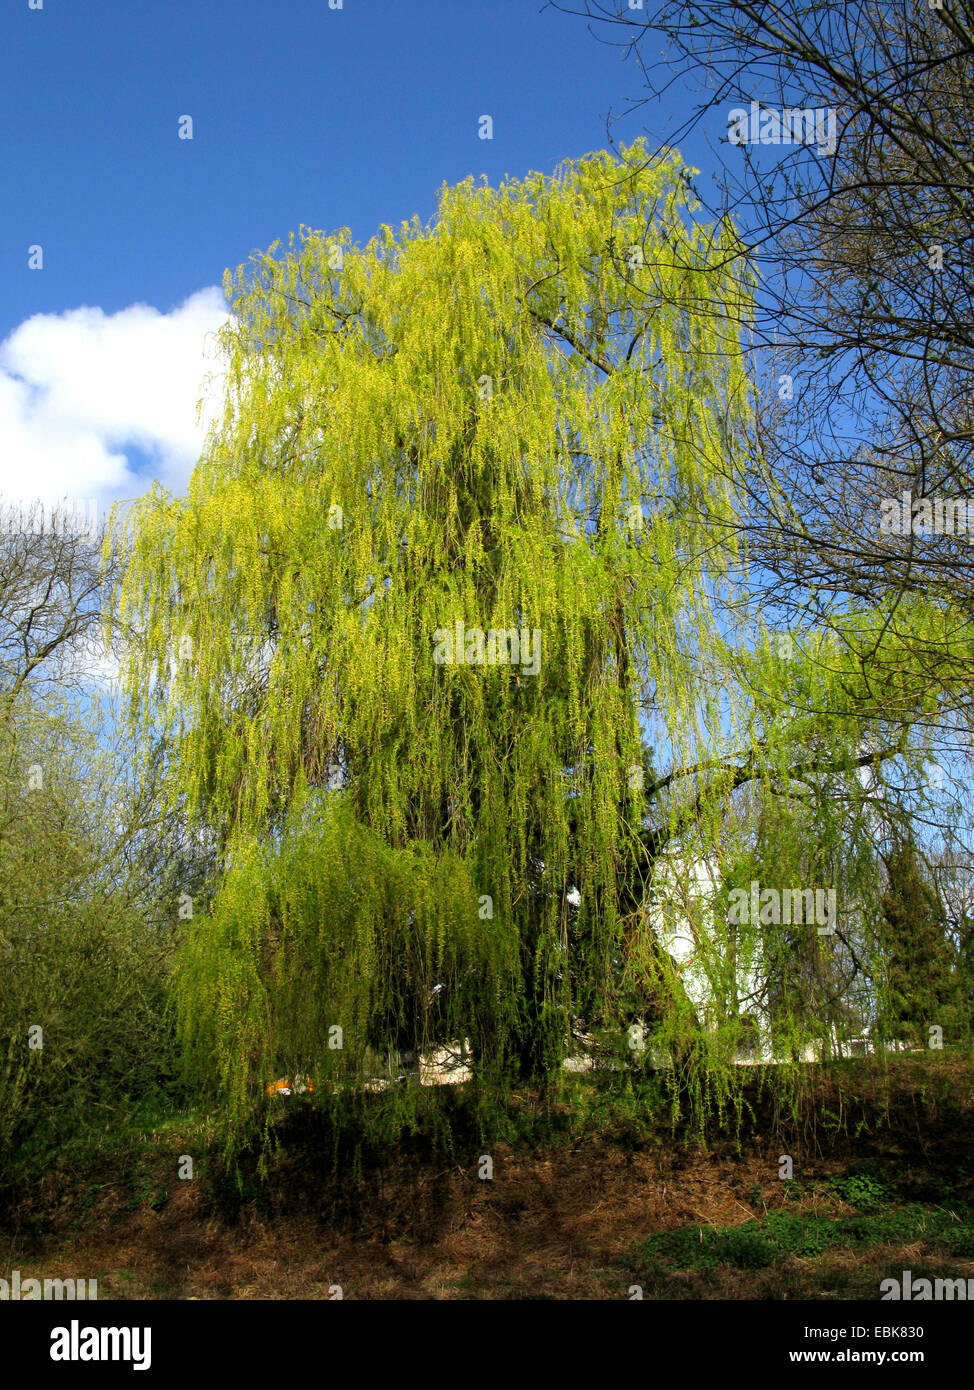 Gris nain saule (Salix tristis), au printemps dans un parc, l'Allemagne, en Rhénanie du Nord-Westphalie, région de la Ruhr, Bochum Banque D'Images